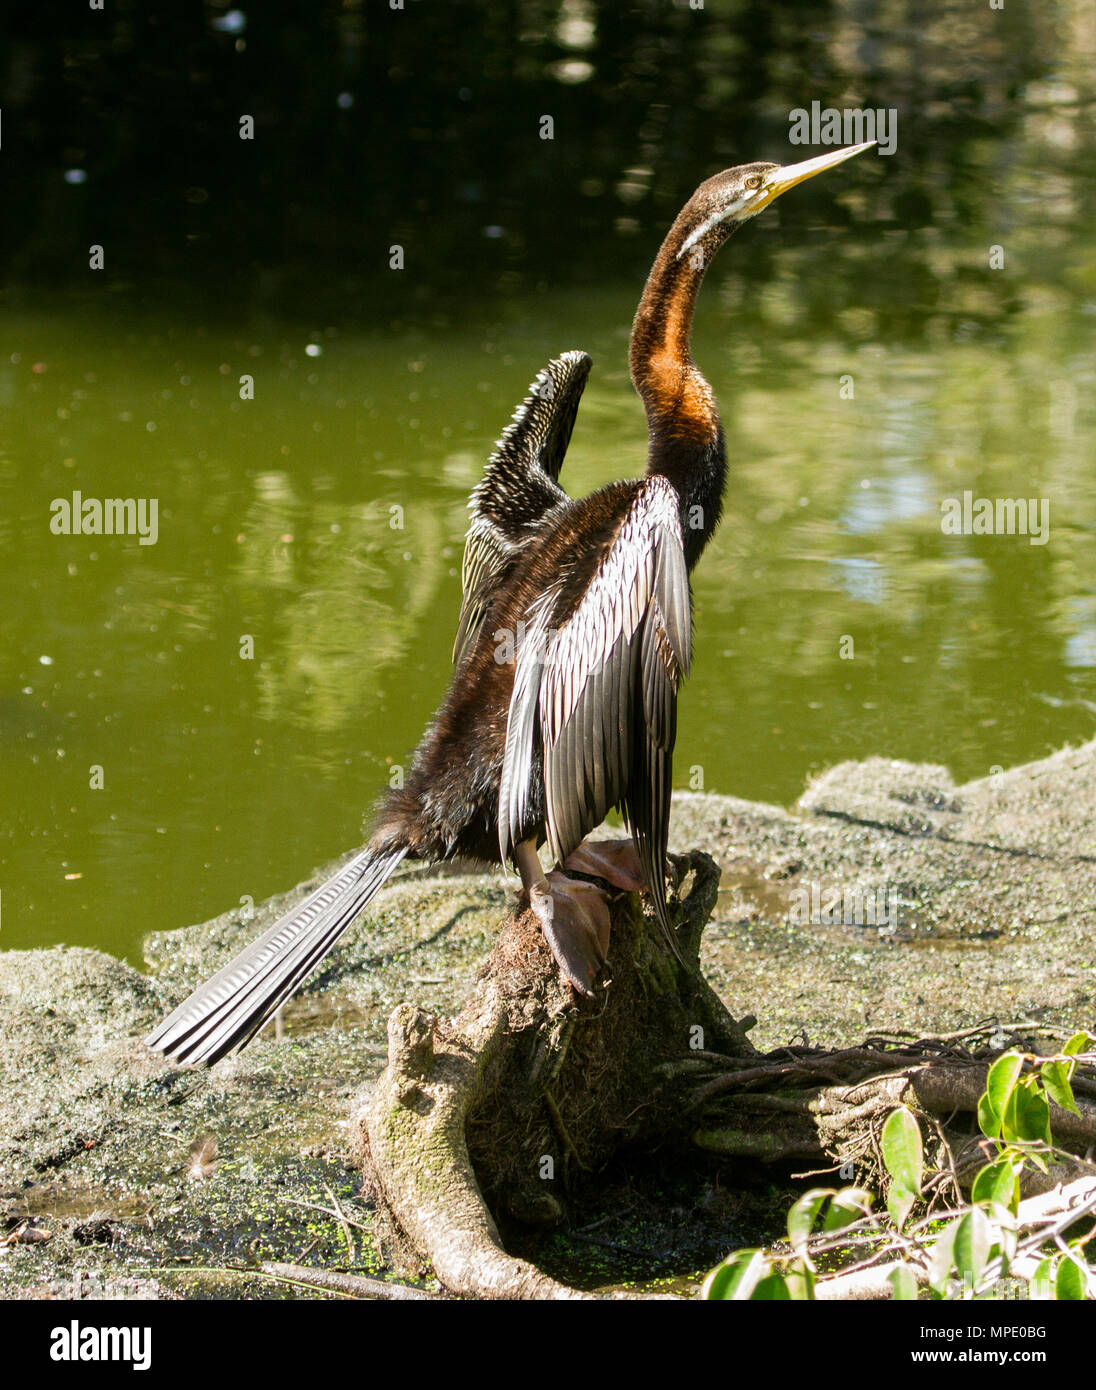 Australische wasservogelabkommens, Snake-necked Darter, neben Wasser mit Flügeln Abmelden im städtischen Park zu trocknen gehockt Stockfoto